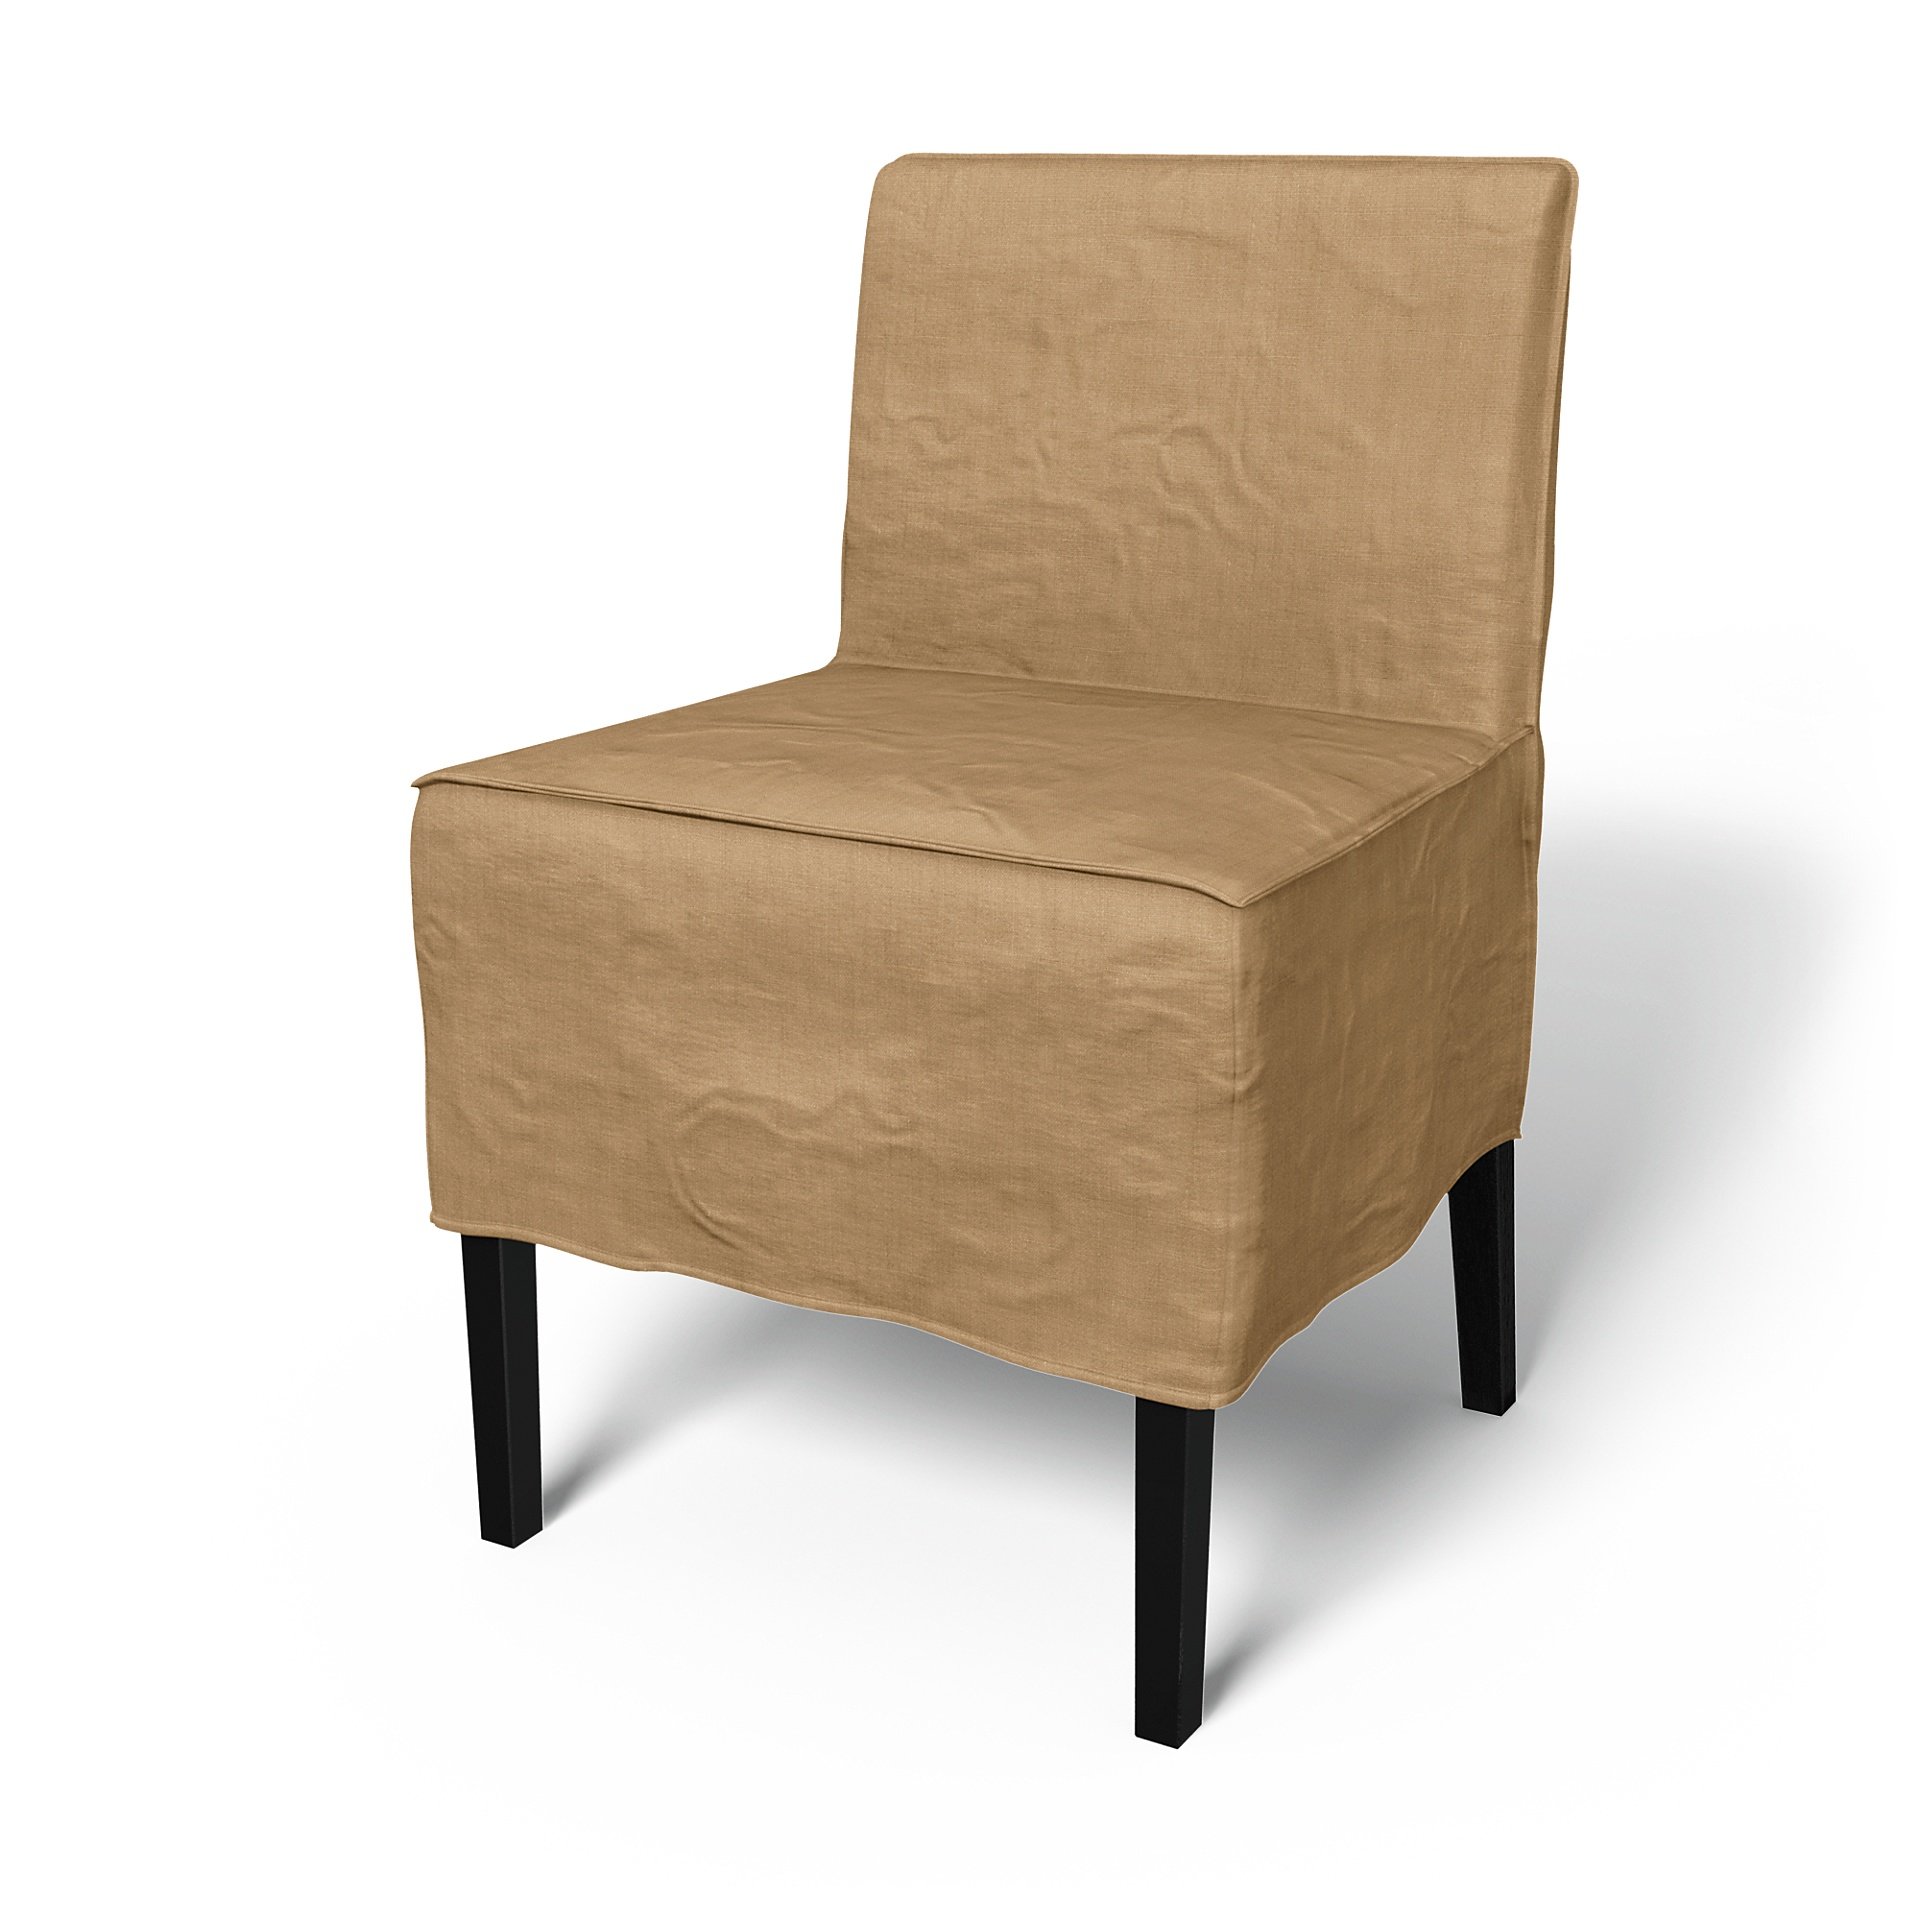 IKEA - Nils Dining Chair Cover, Hemp, Linen - Bemz